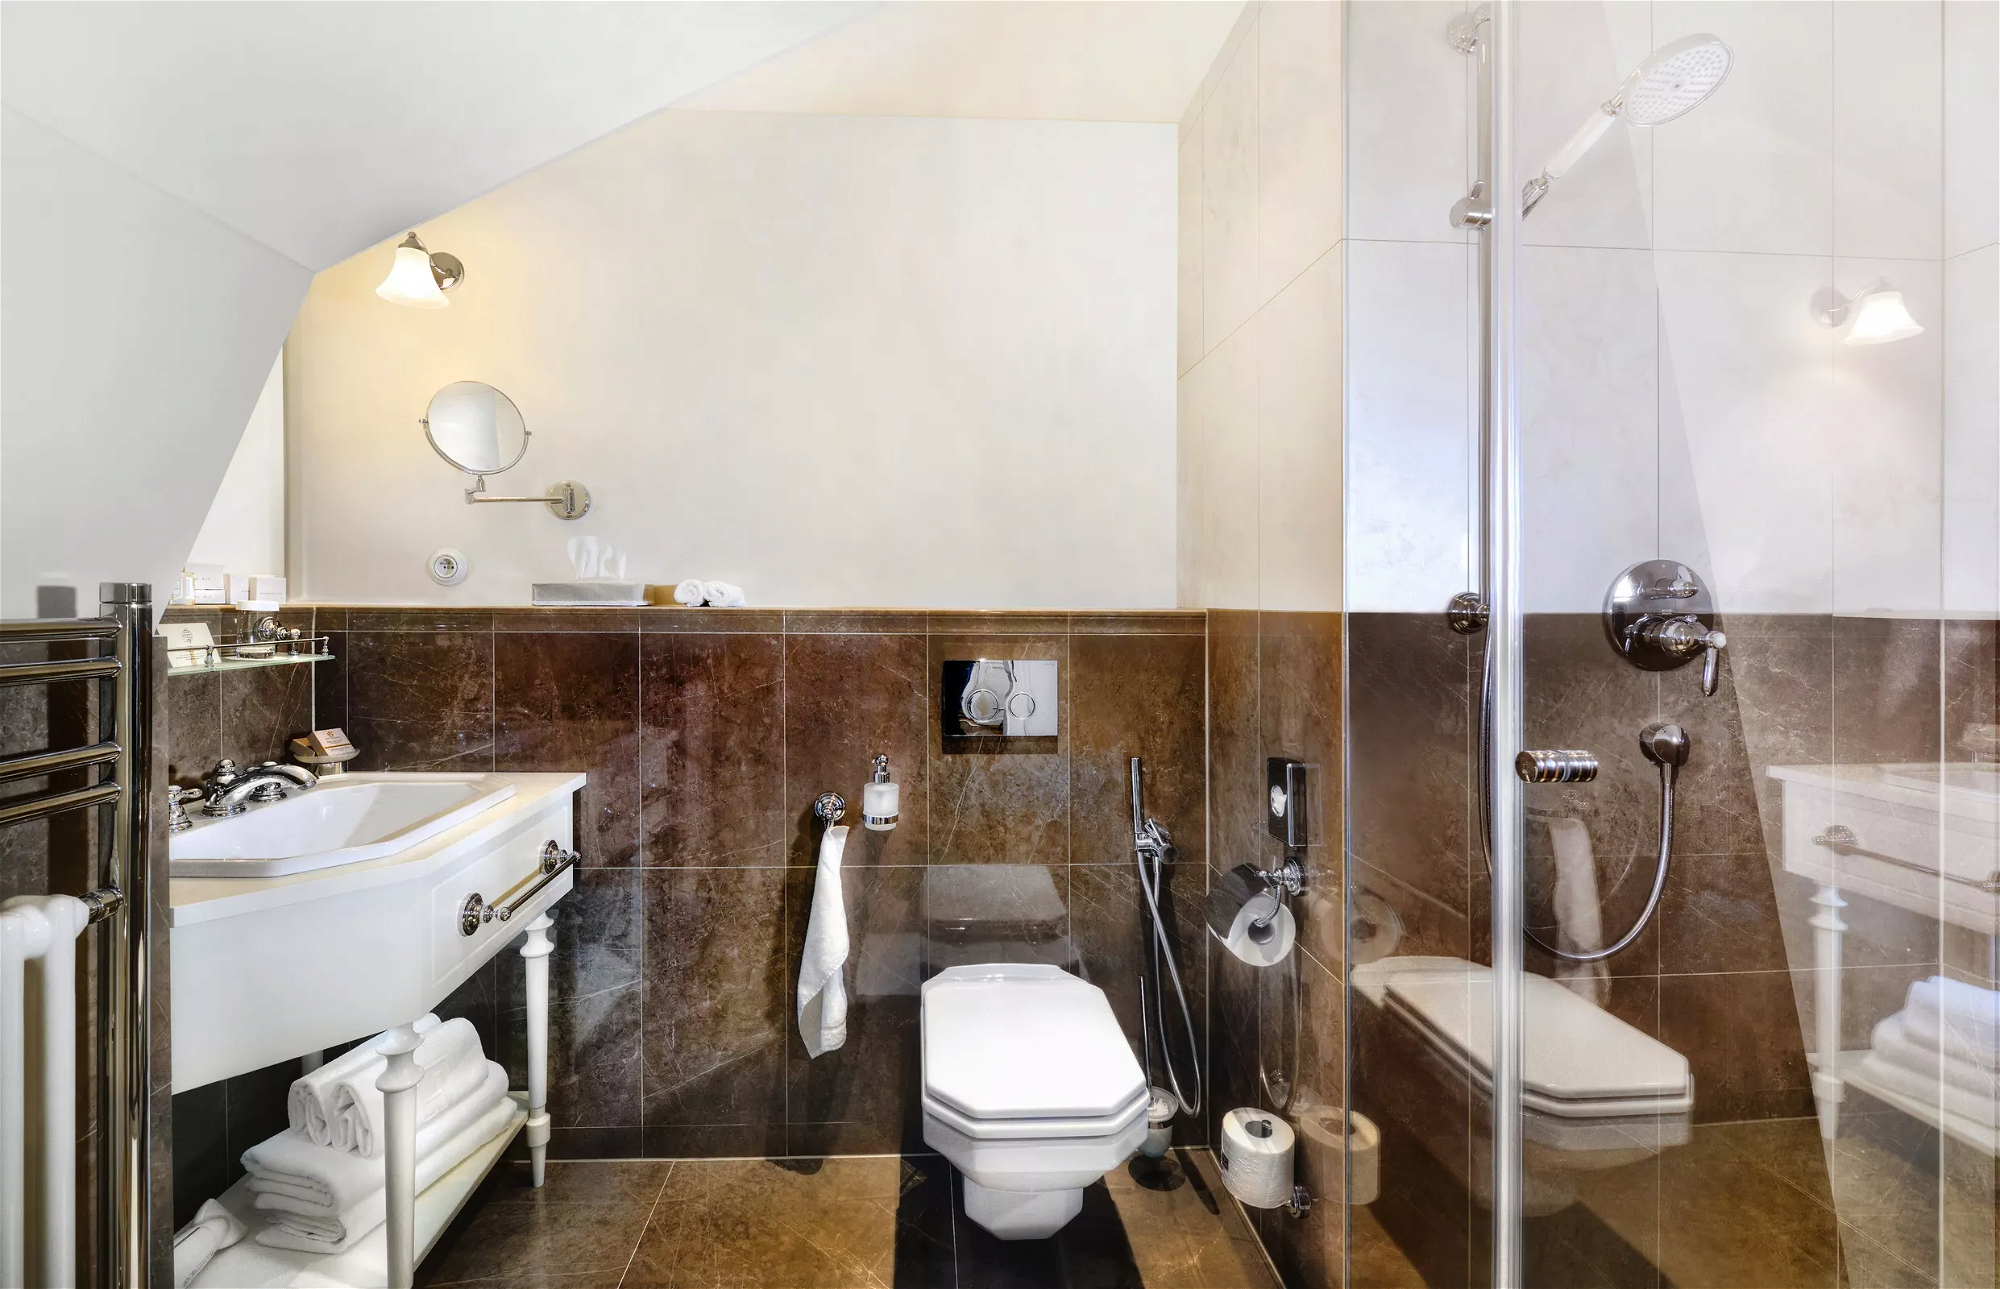 Toaleta v Hoteli Lomnica vo Vysokých Tatrách